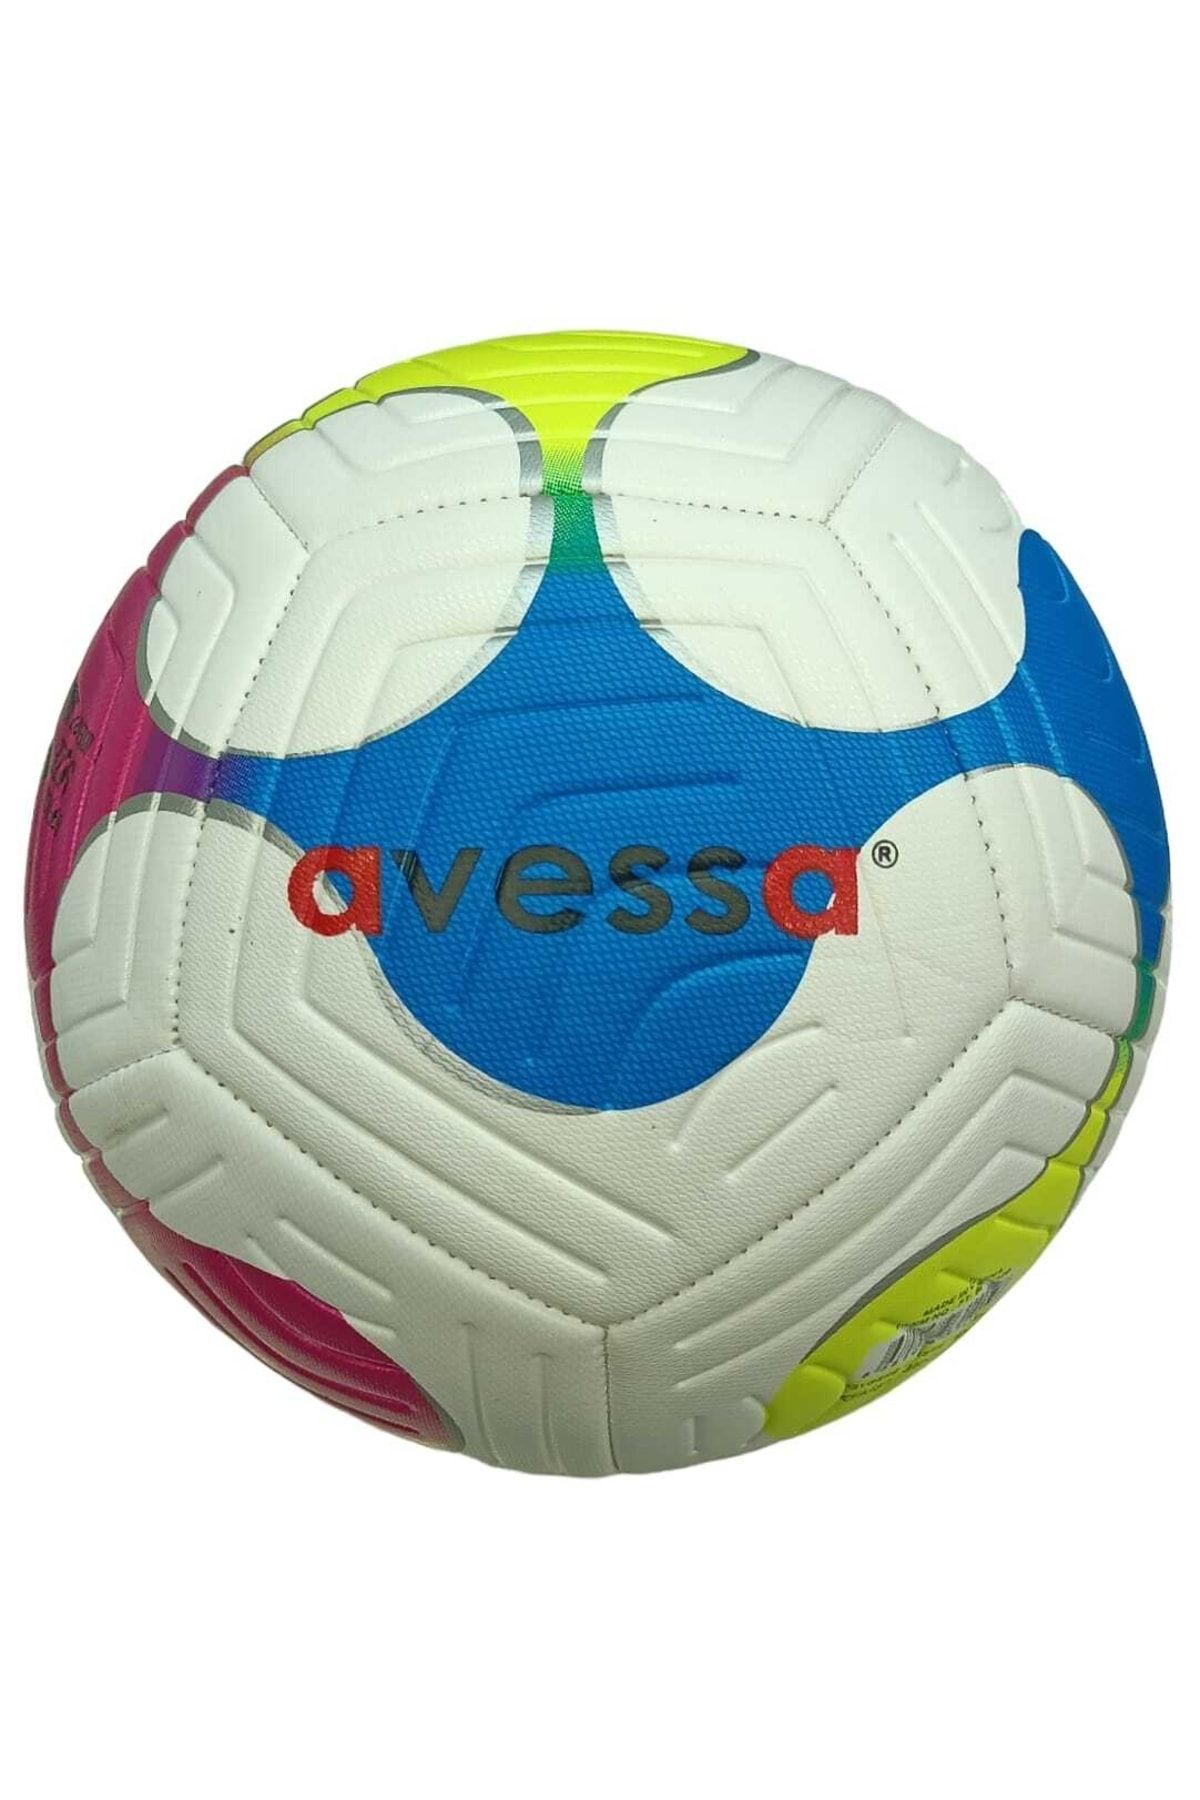 Avessa Ft-600-120 Futbol Topu No.5 Sarı Kırmızı Mavi Desenli 425 Gr